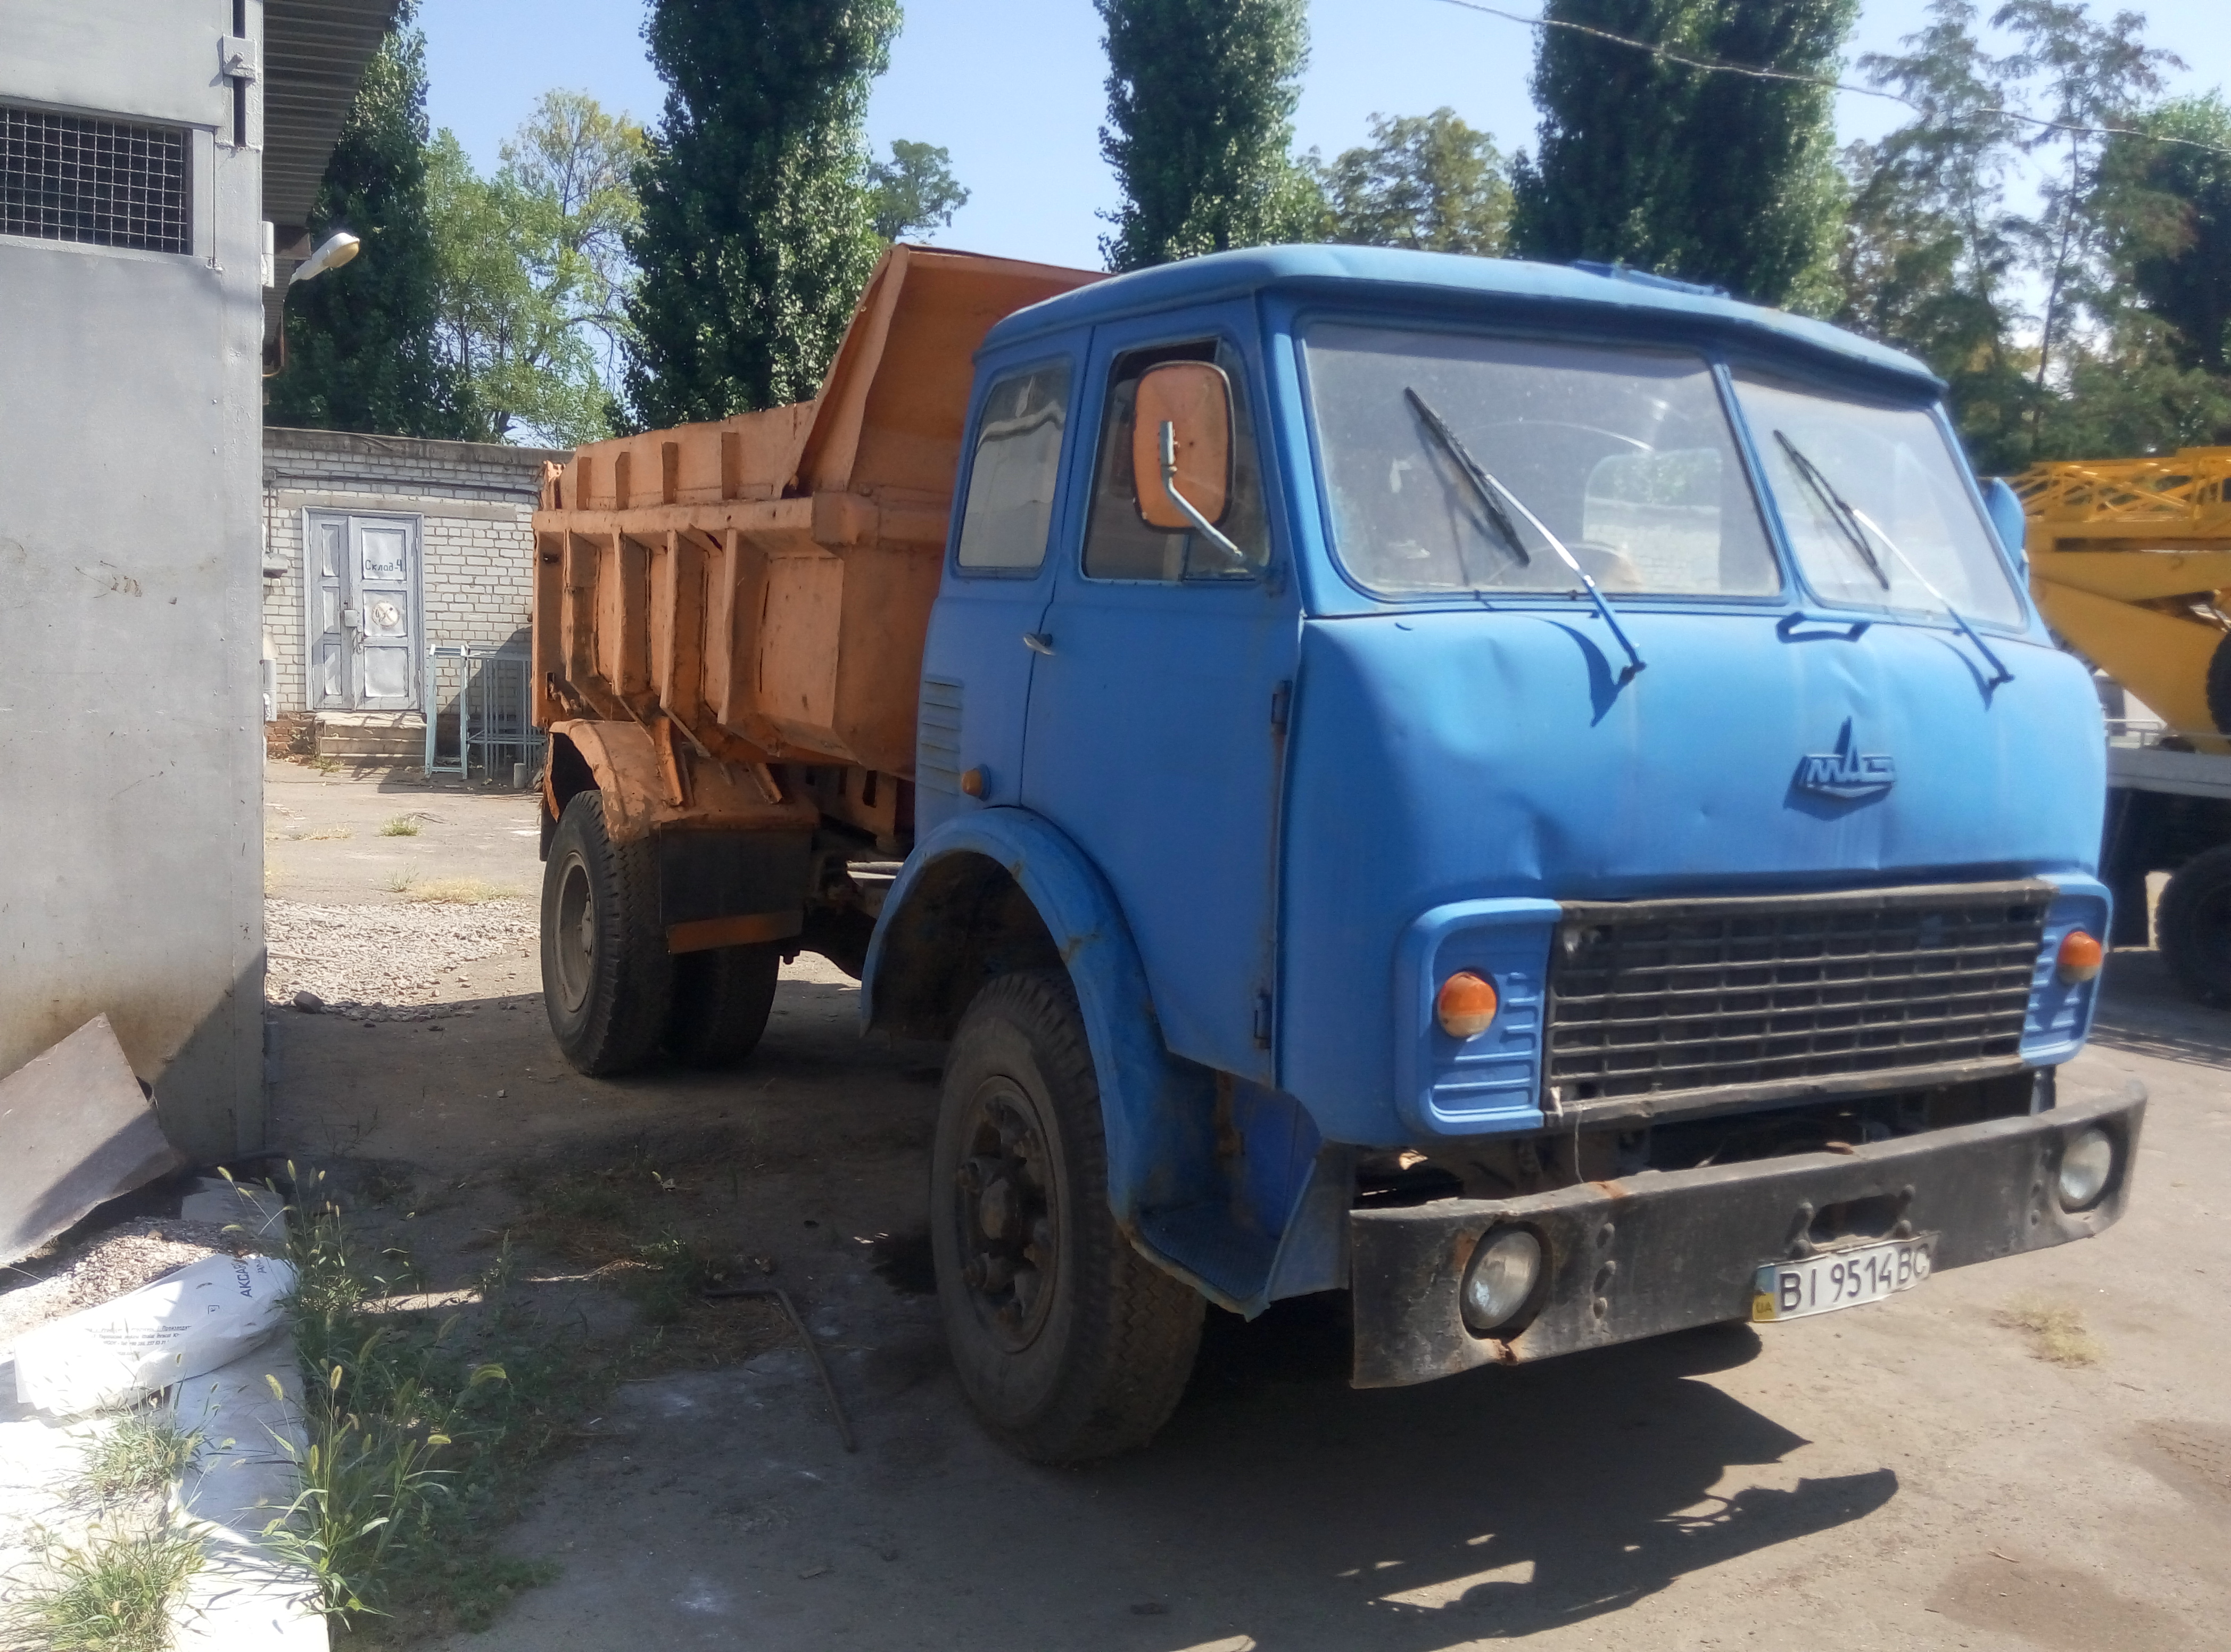 Автомобіль МАЗ-5549, державний номер ВІ 9514 ВС, номер шасі - 11468/1, рік випуску - 1988.
зображення